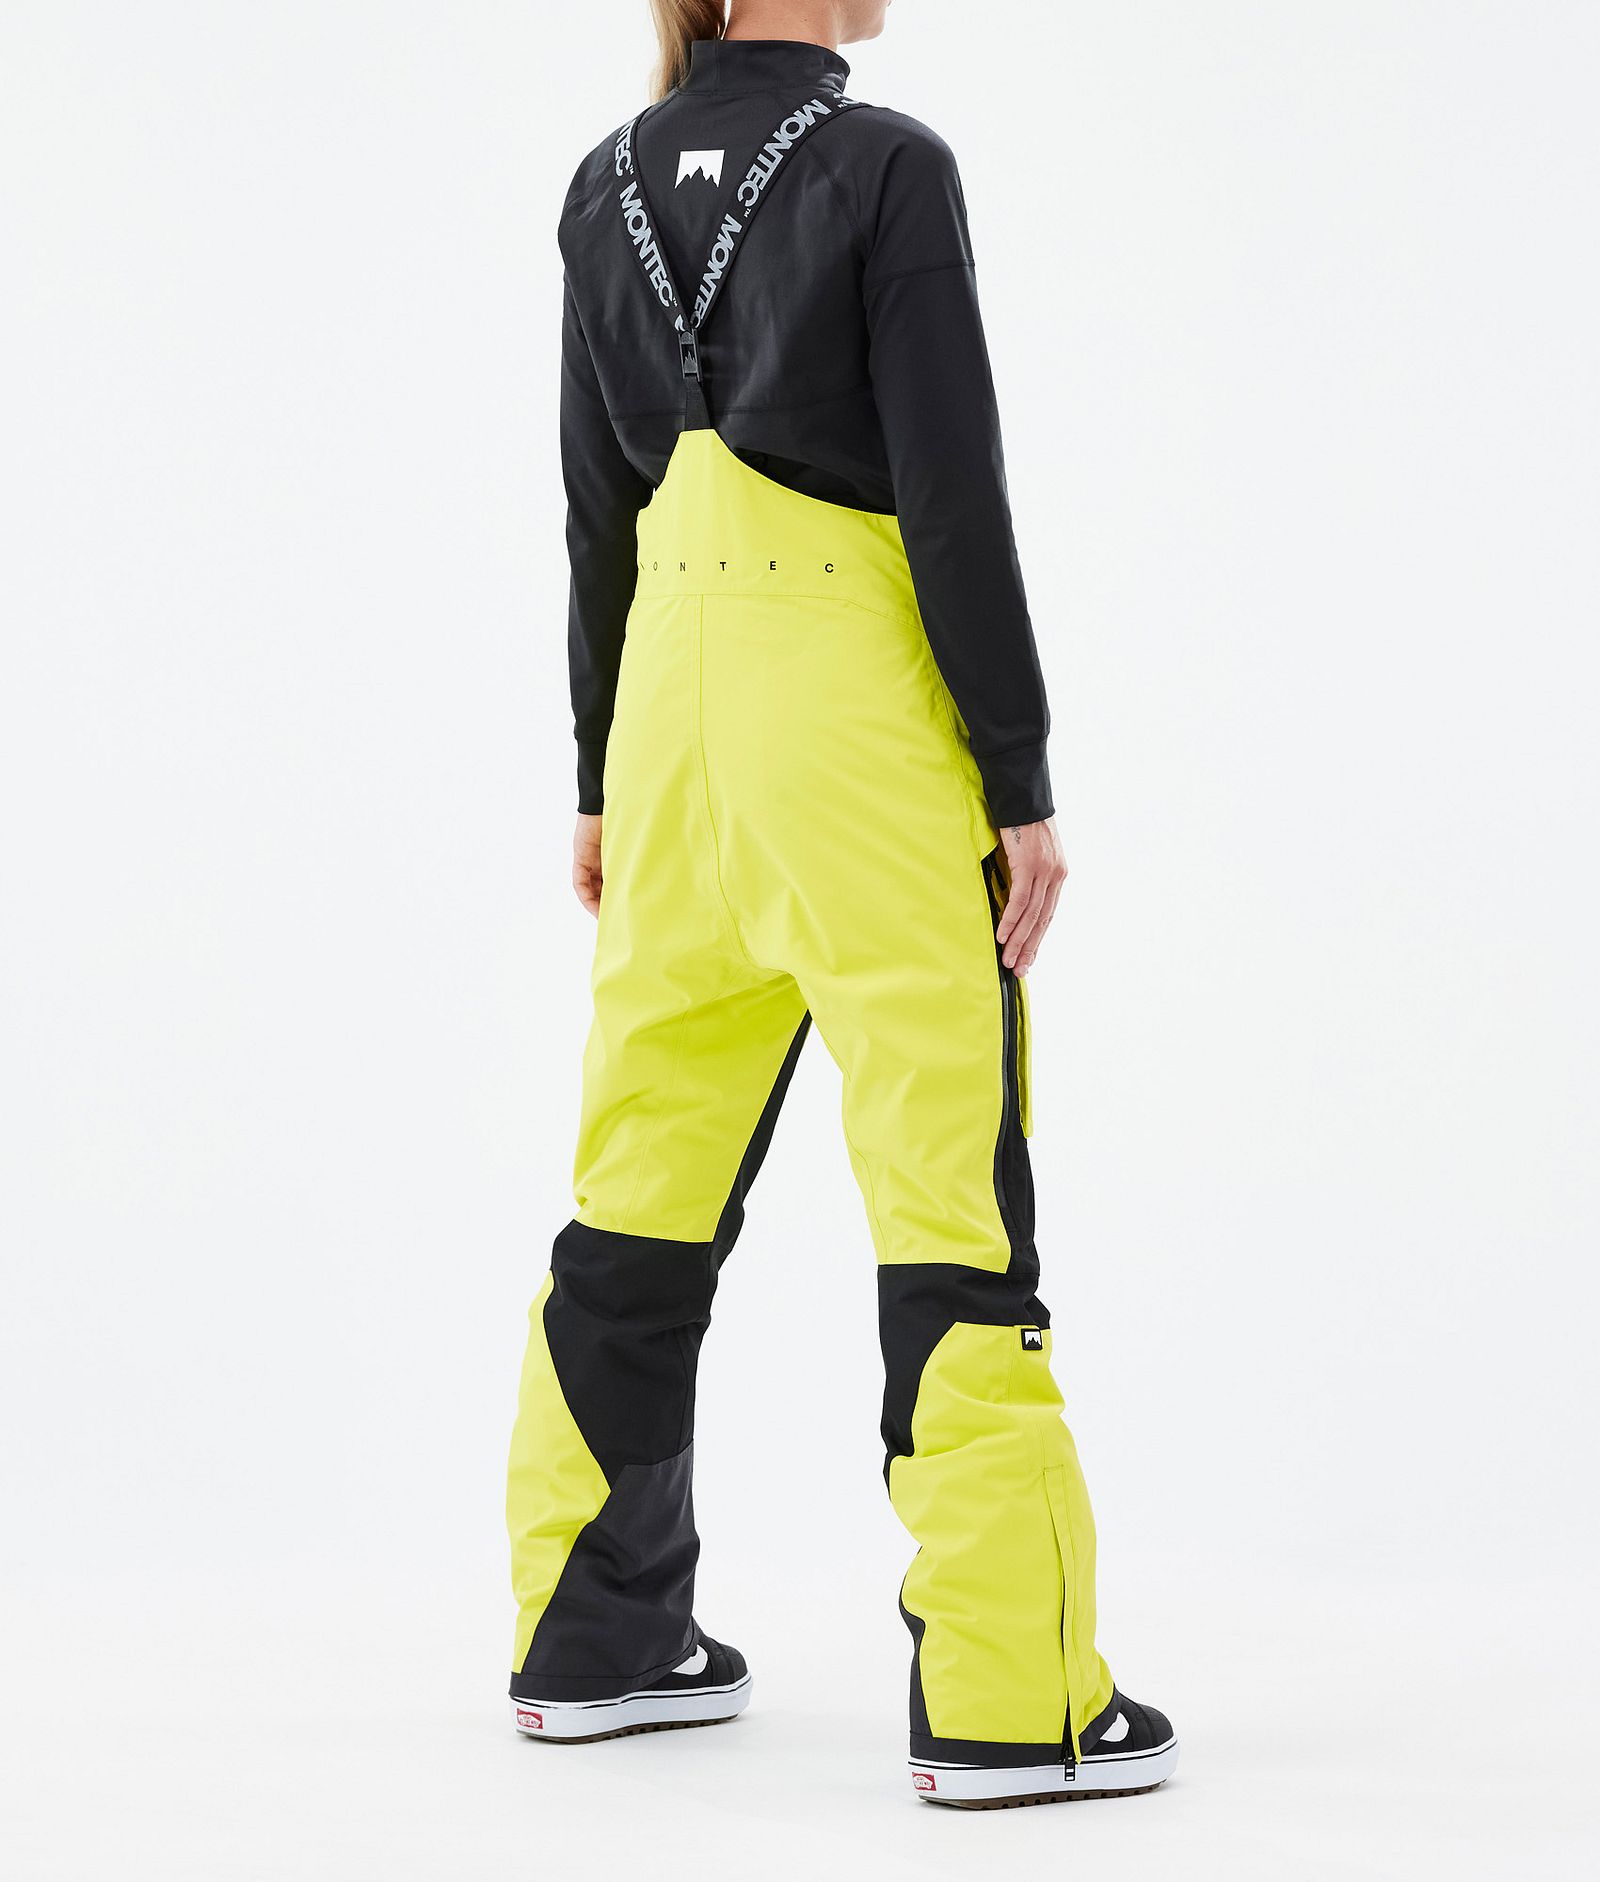 Fawk W Spodnie Snowboardowe Kobiety Bright Yellow/Black Renewed, Zdjęcie 3 z 6